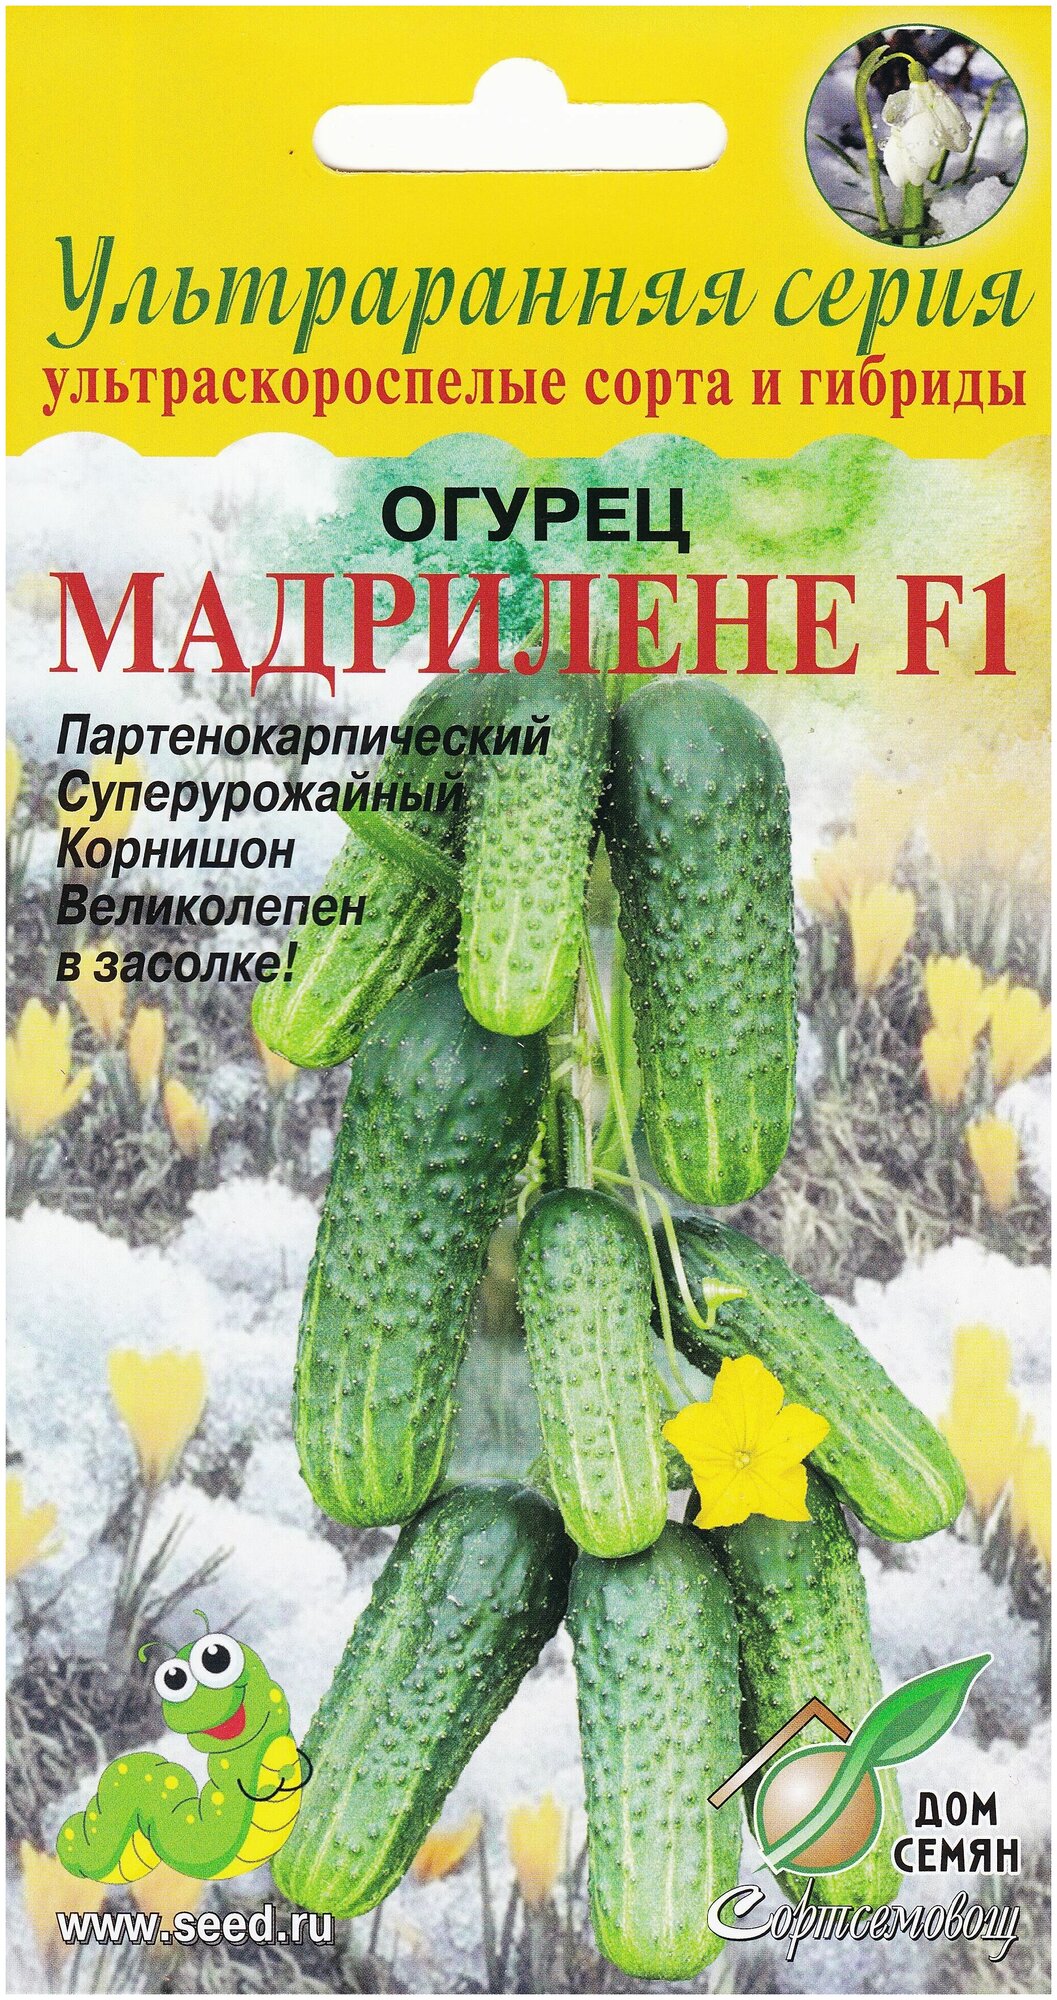 Огурец Мадрилене F1 6 семян